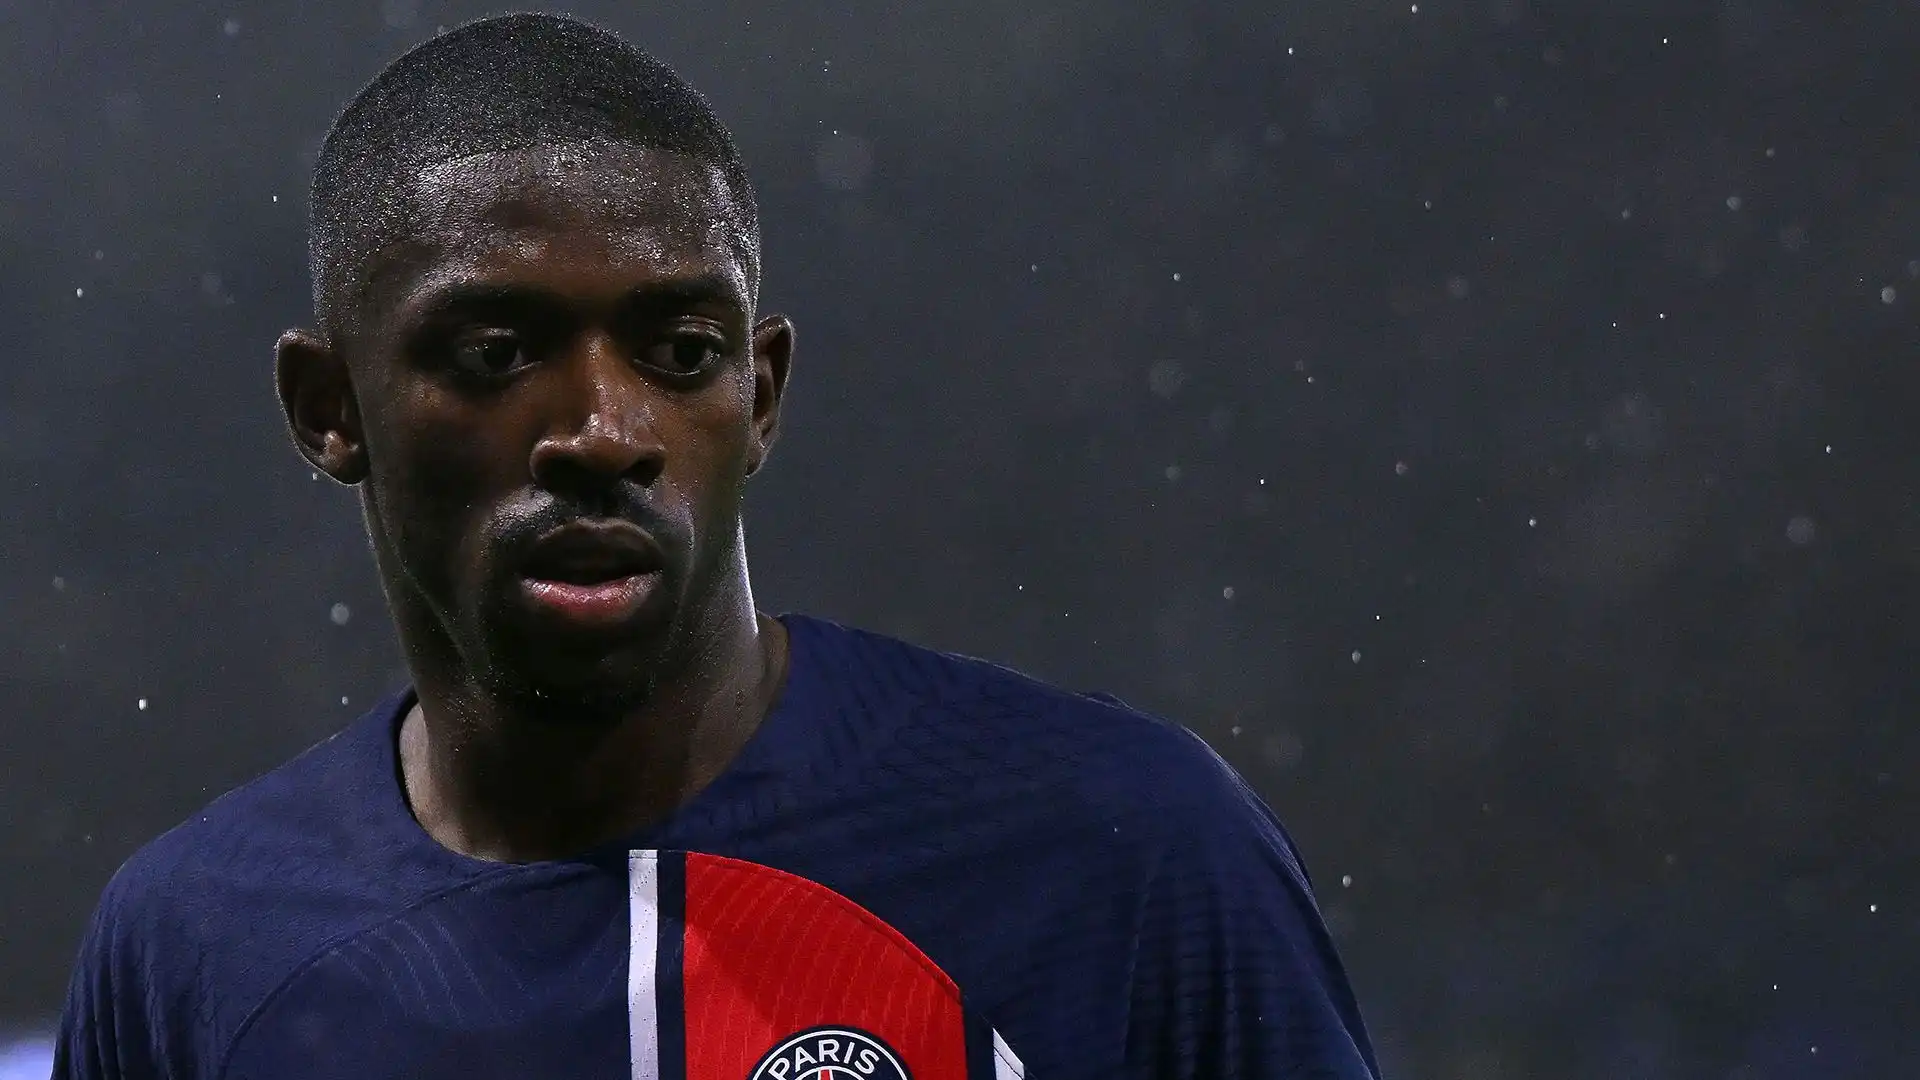 Dopo la partenza di Mbappé, Dembélé sarebbe dovuto diventare centrale nel progetto del PSG